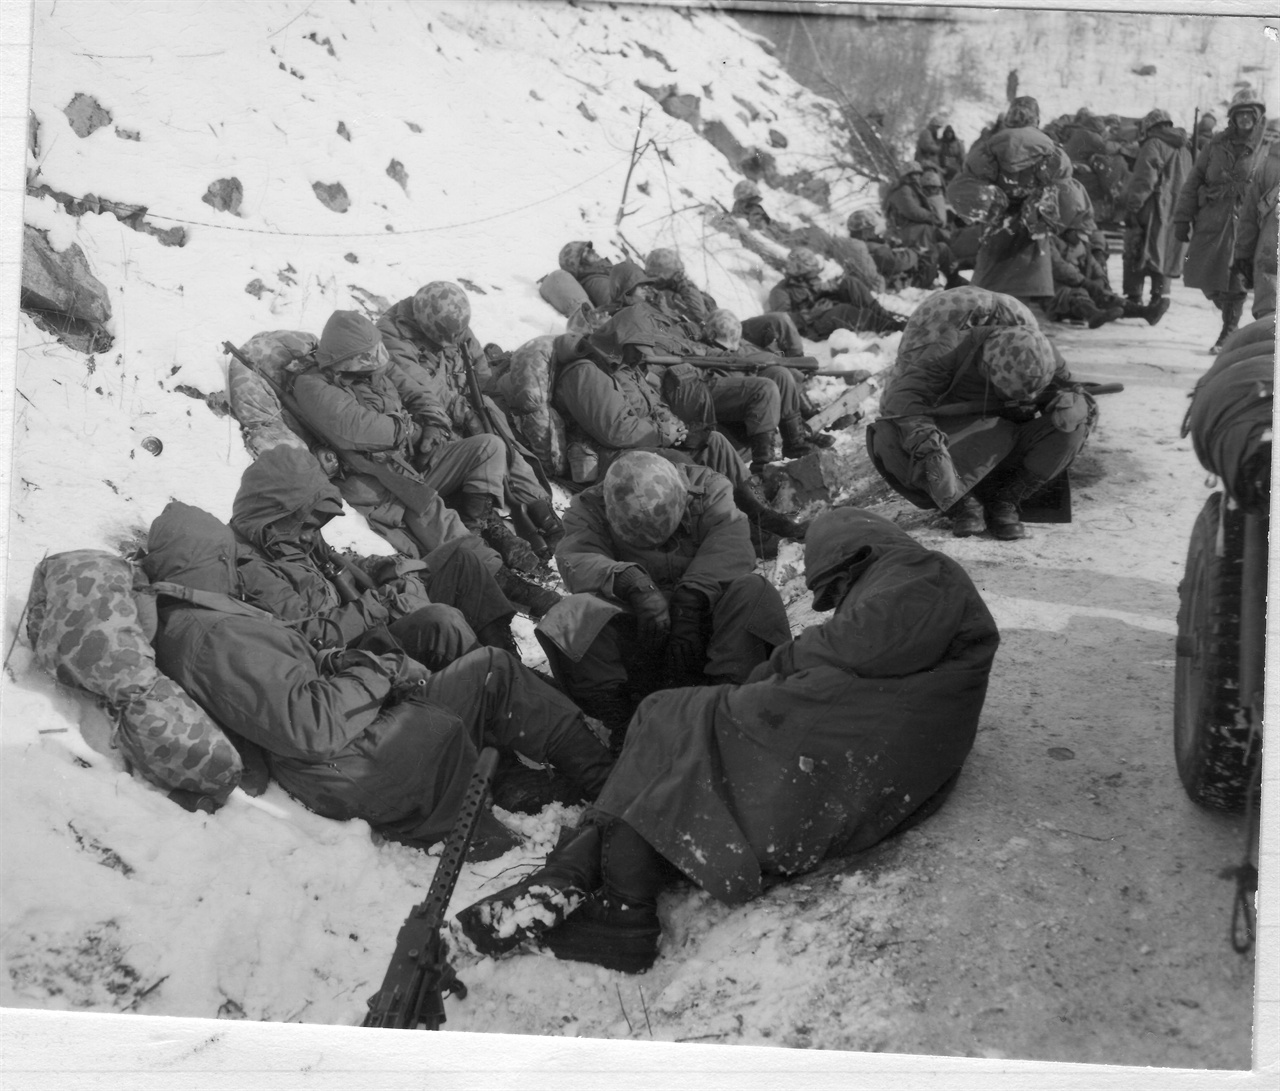  1950. 12. 6. 중국군 참전으로 유엔군들이 강추위 속에 후퇴하면서 추위와 졸음으로 길가에 쓰러져 눈을 붙이고 있다.